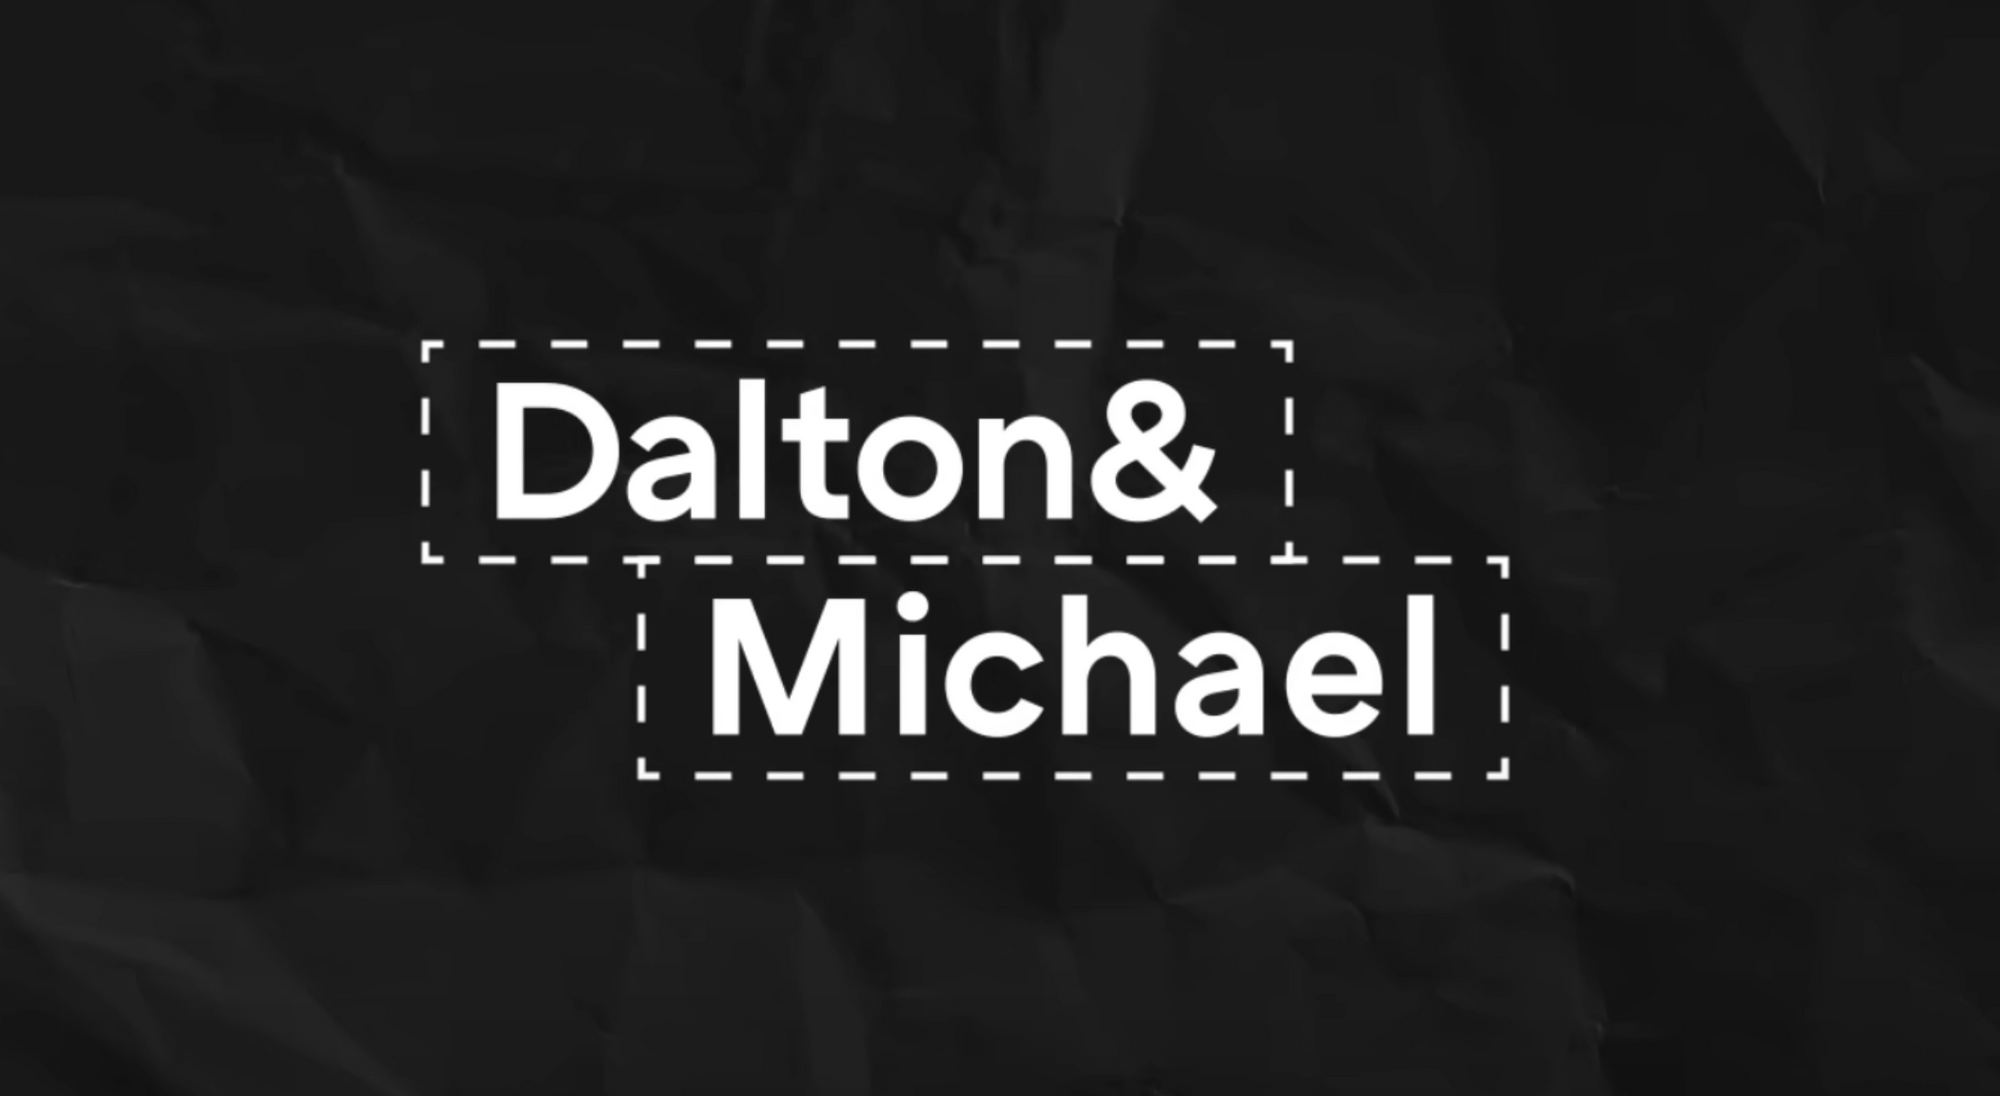 Title card that reads "Dalton & Michael"